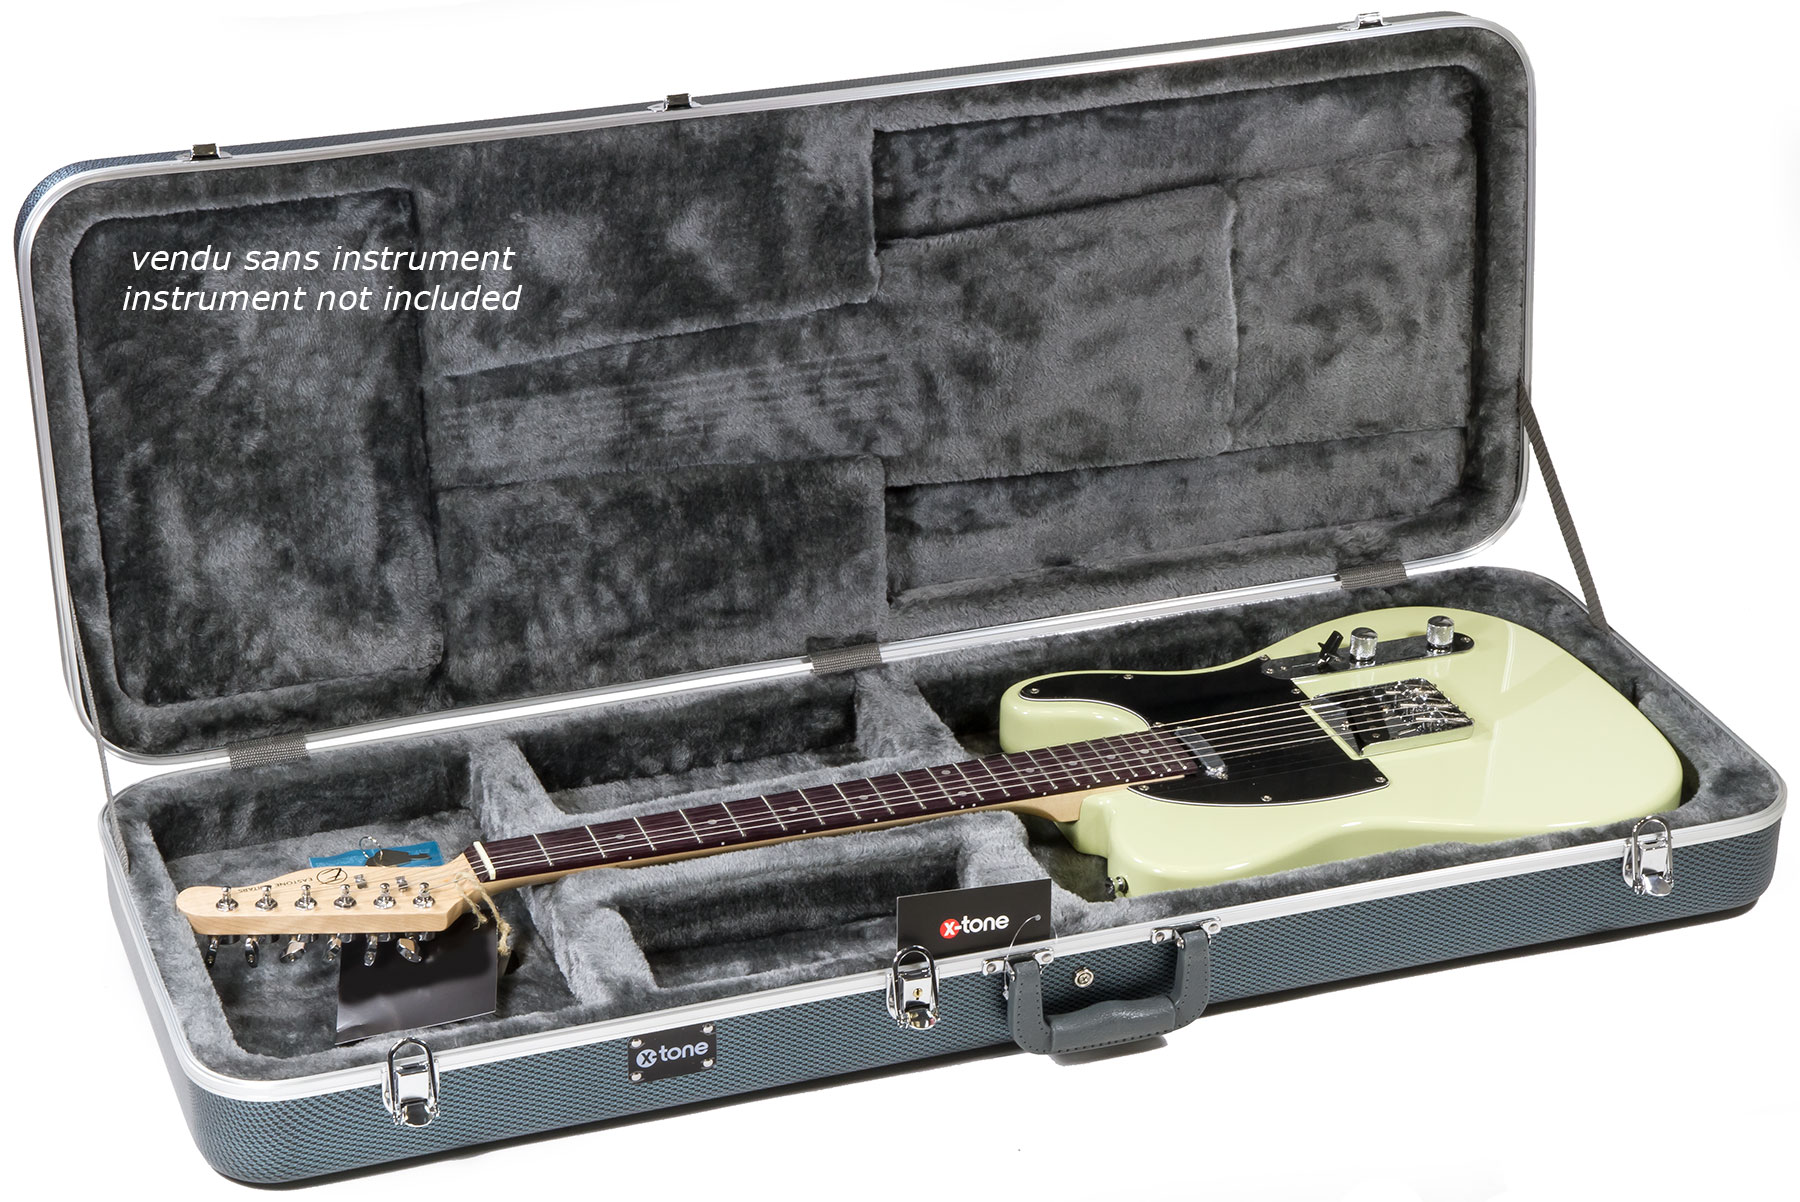 X-tone 1510 Abs Electrique Strat/tele Rectangulaire Silver - Electric guitar case - Variation 2